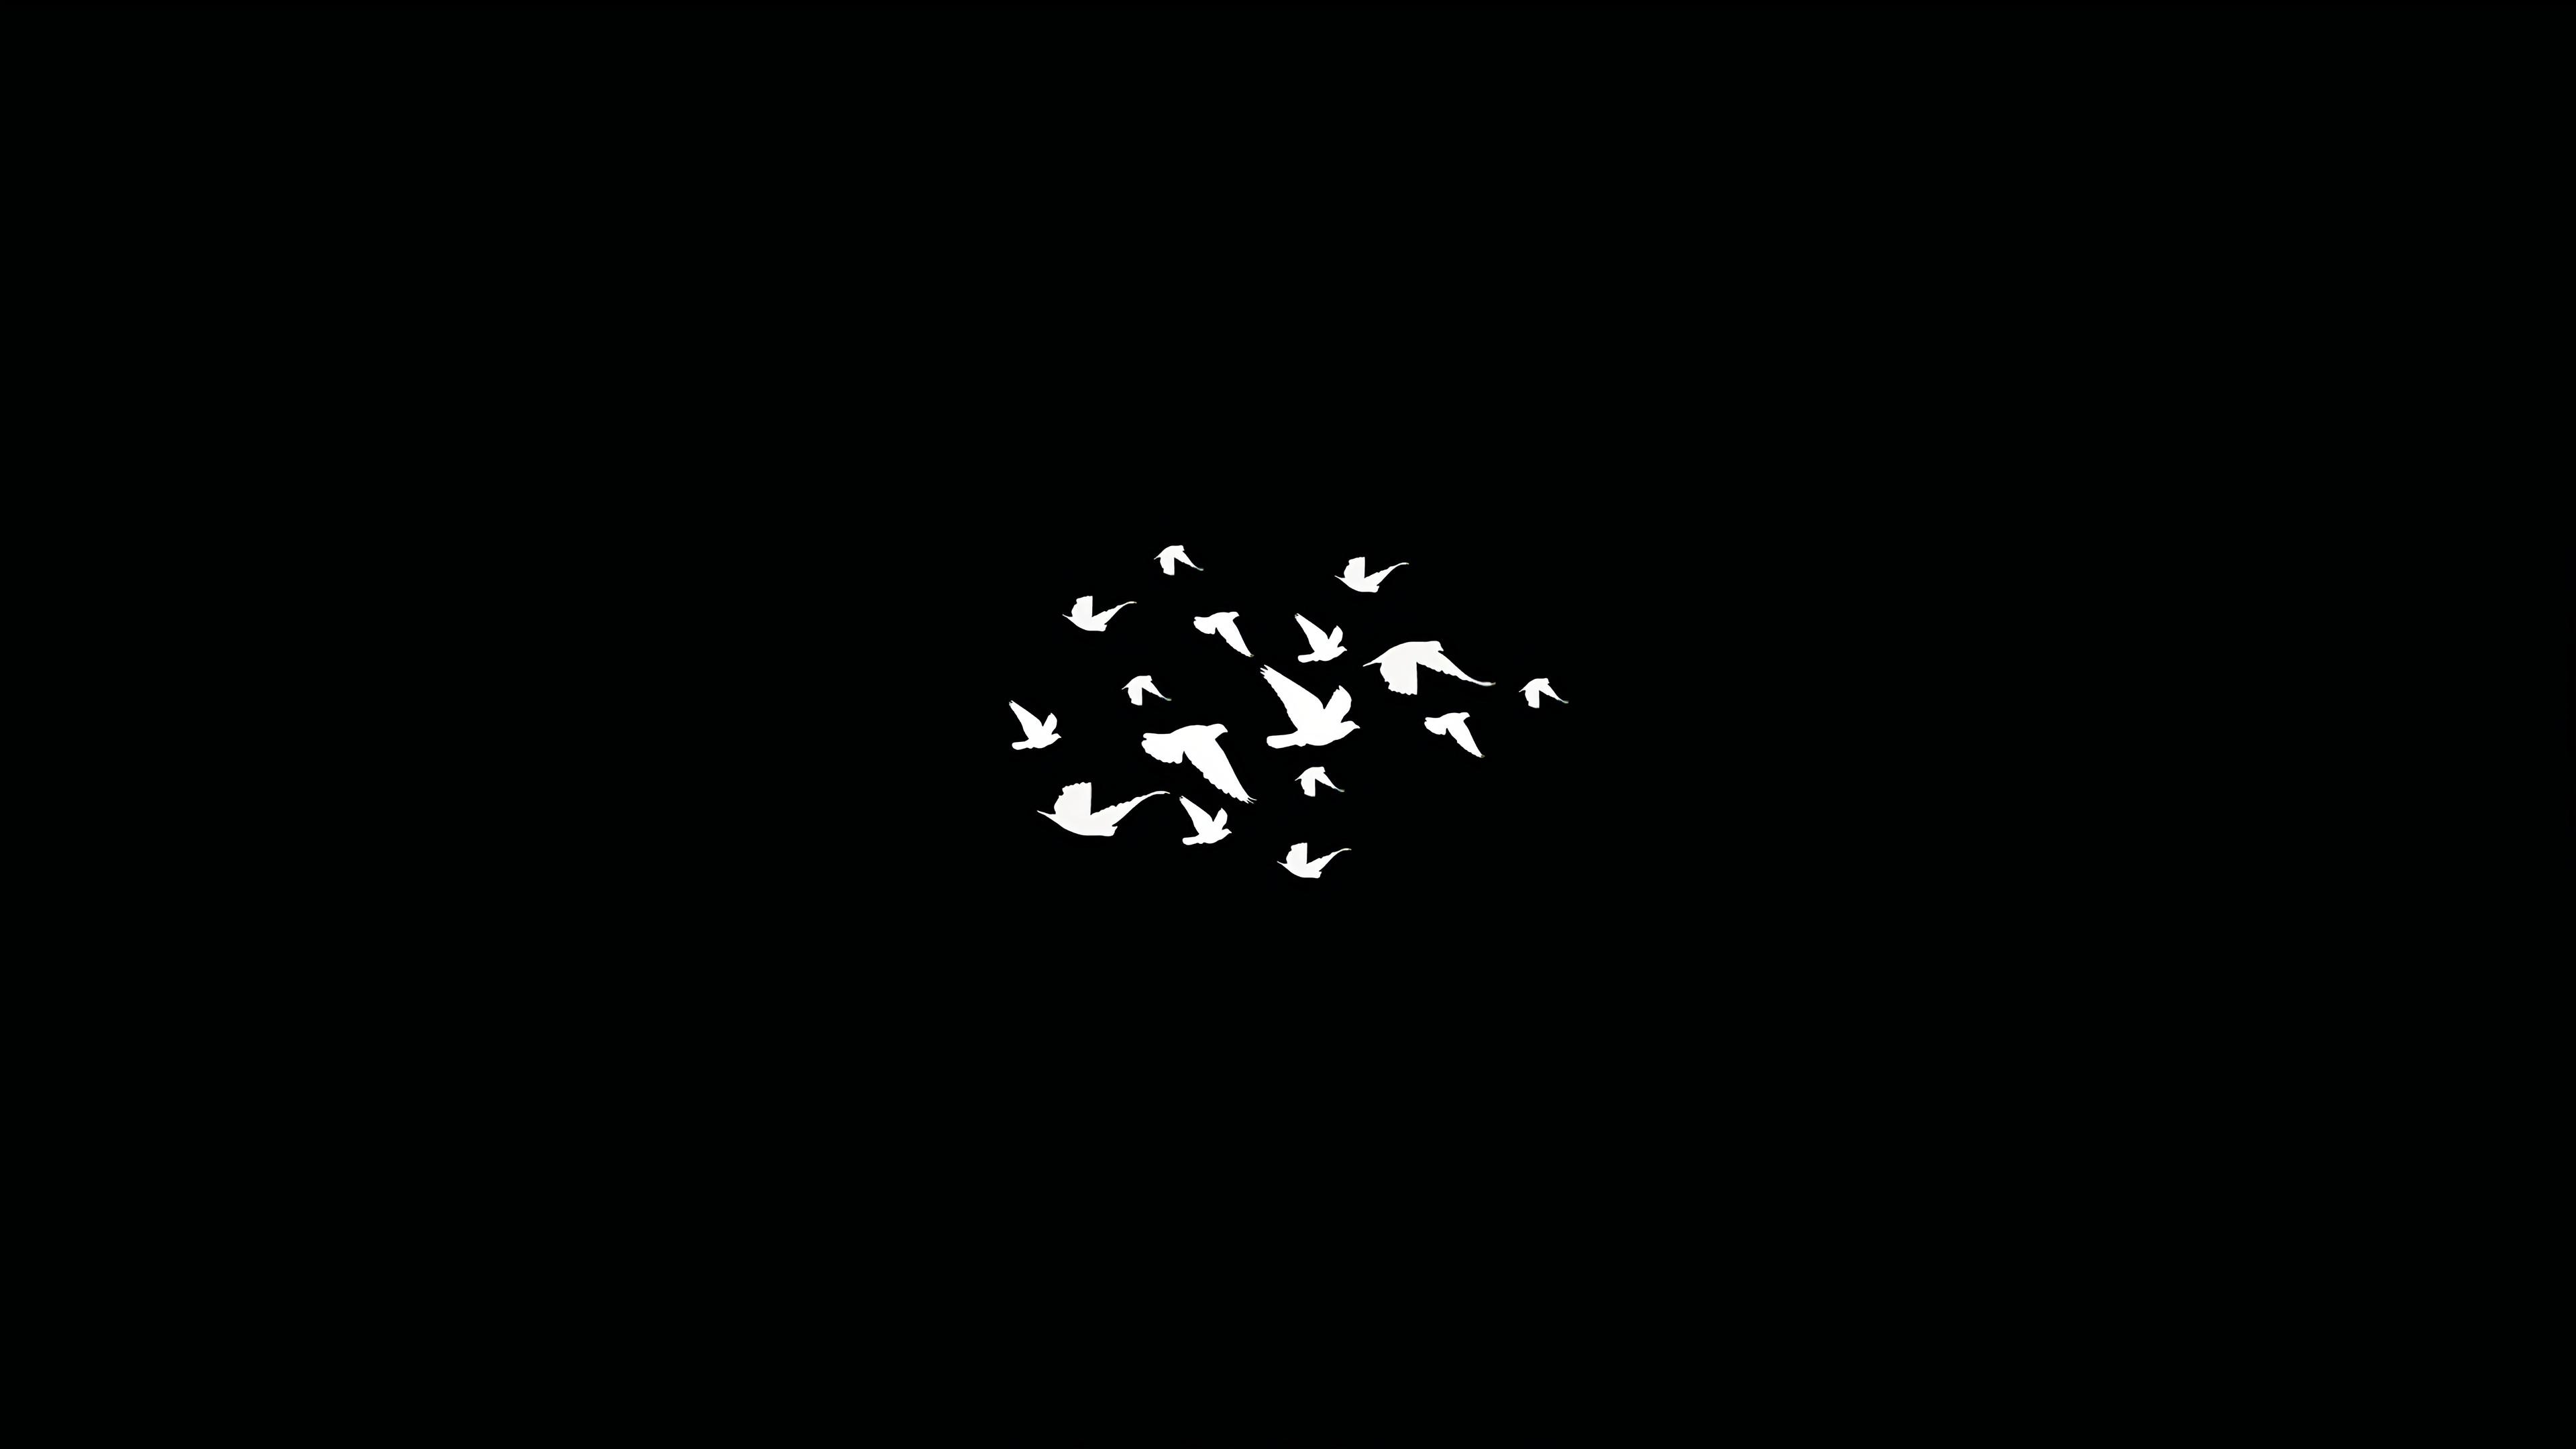 Birds Flying Minimalist Dark 4k, HD Artist, 4k Wallpaper